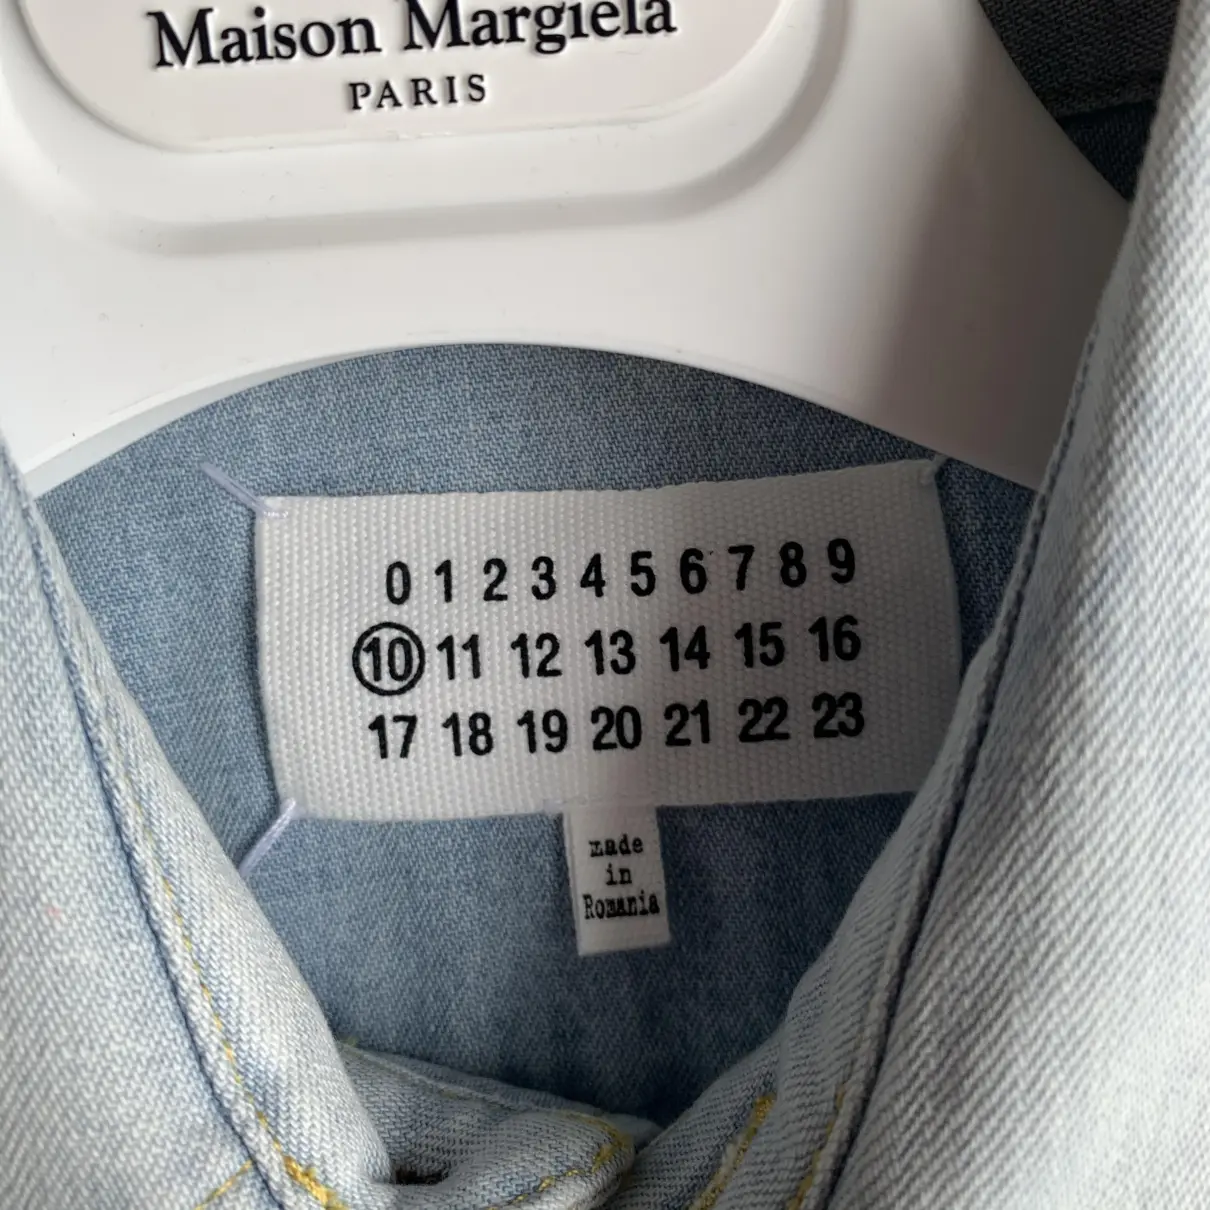 Luxury Maison Martin Margiela Shirts Men